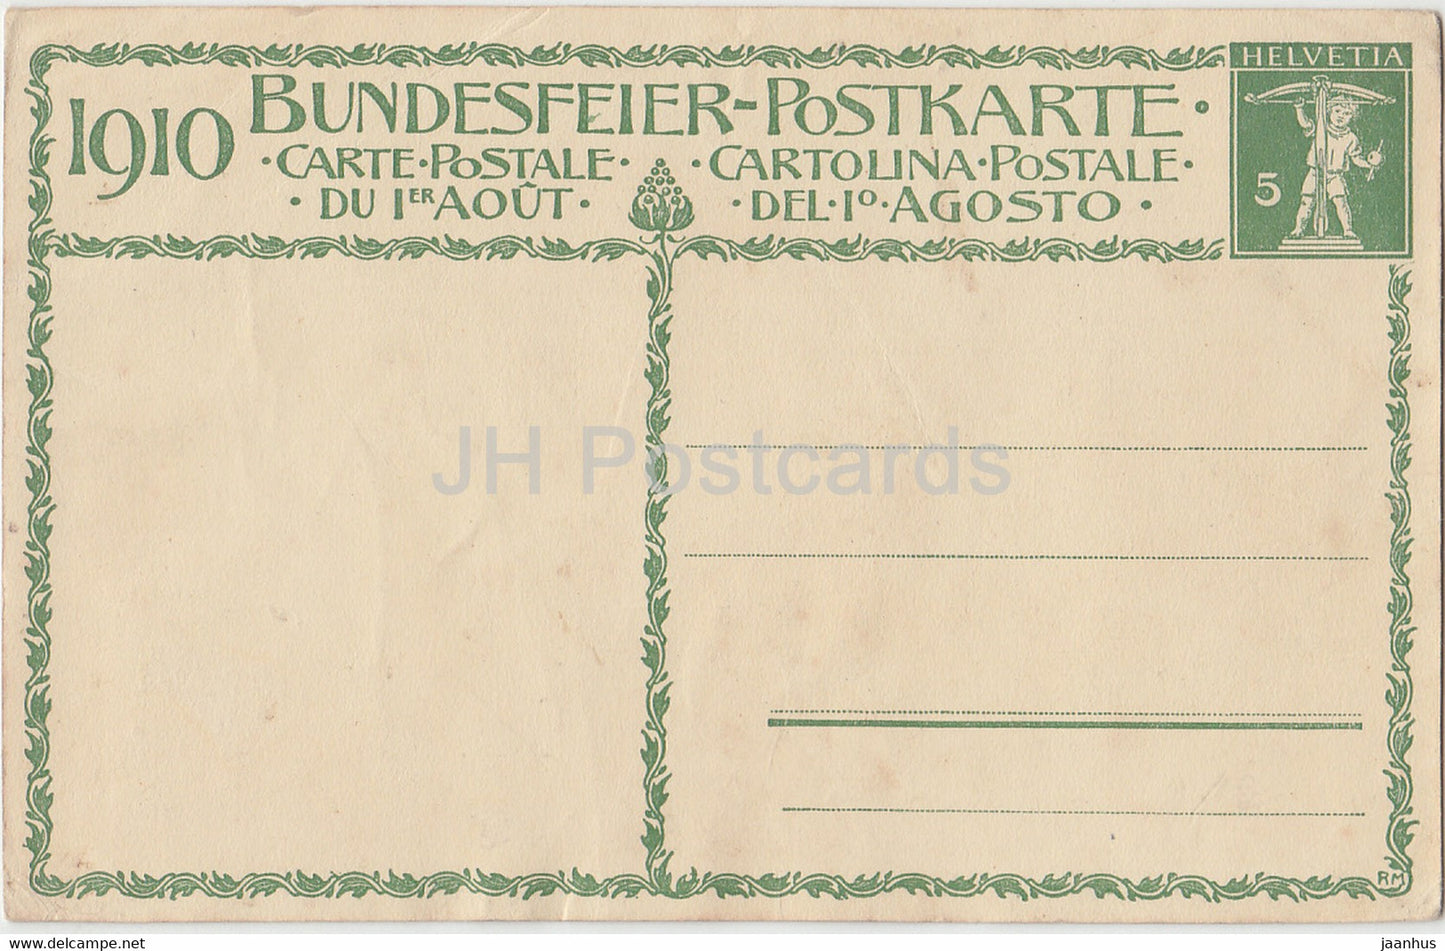 Die Wachter der Heimat Pro Patria - Bundesfeier Postkarte - old postcard - 1910 - Switzerland - unused